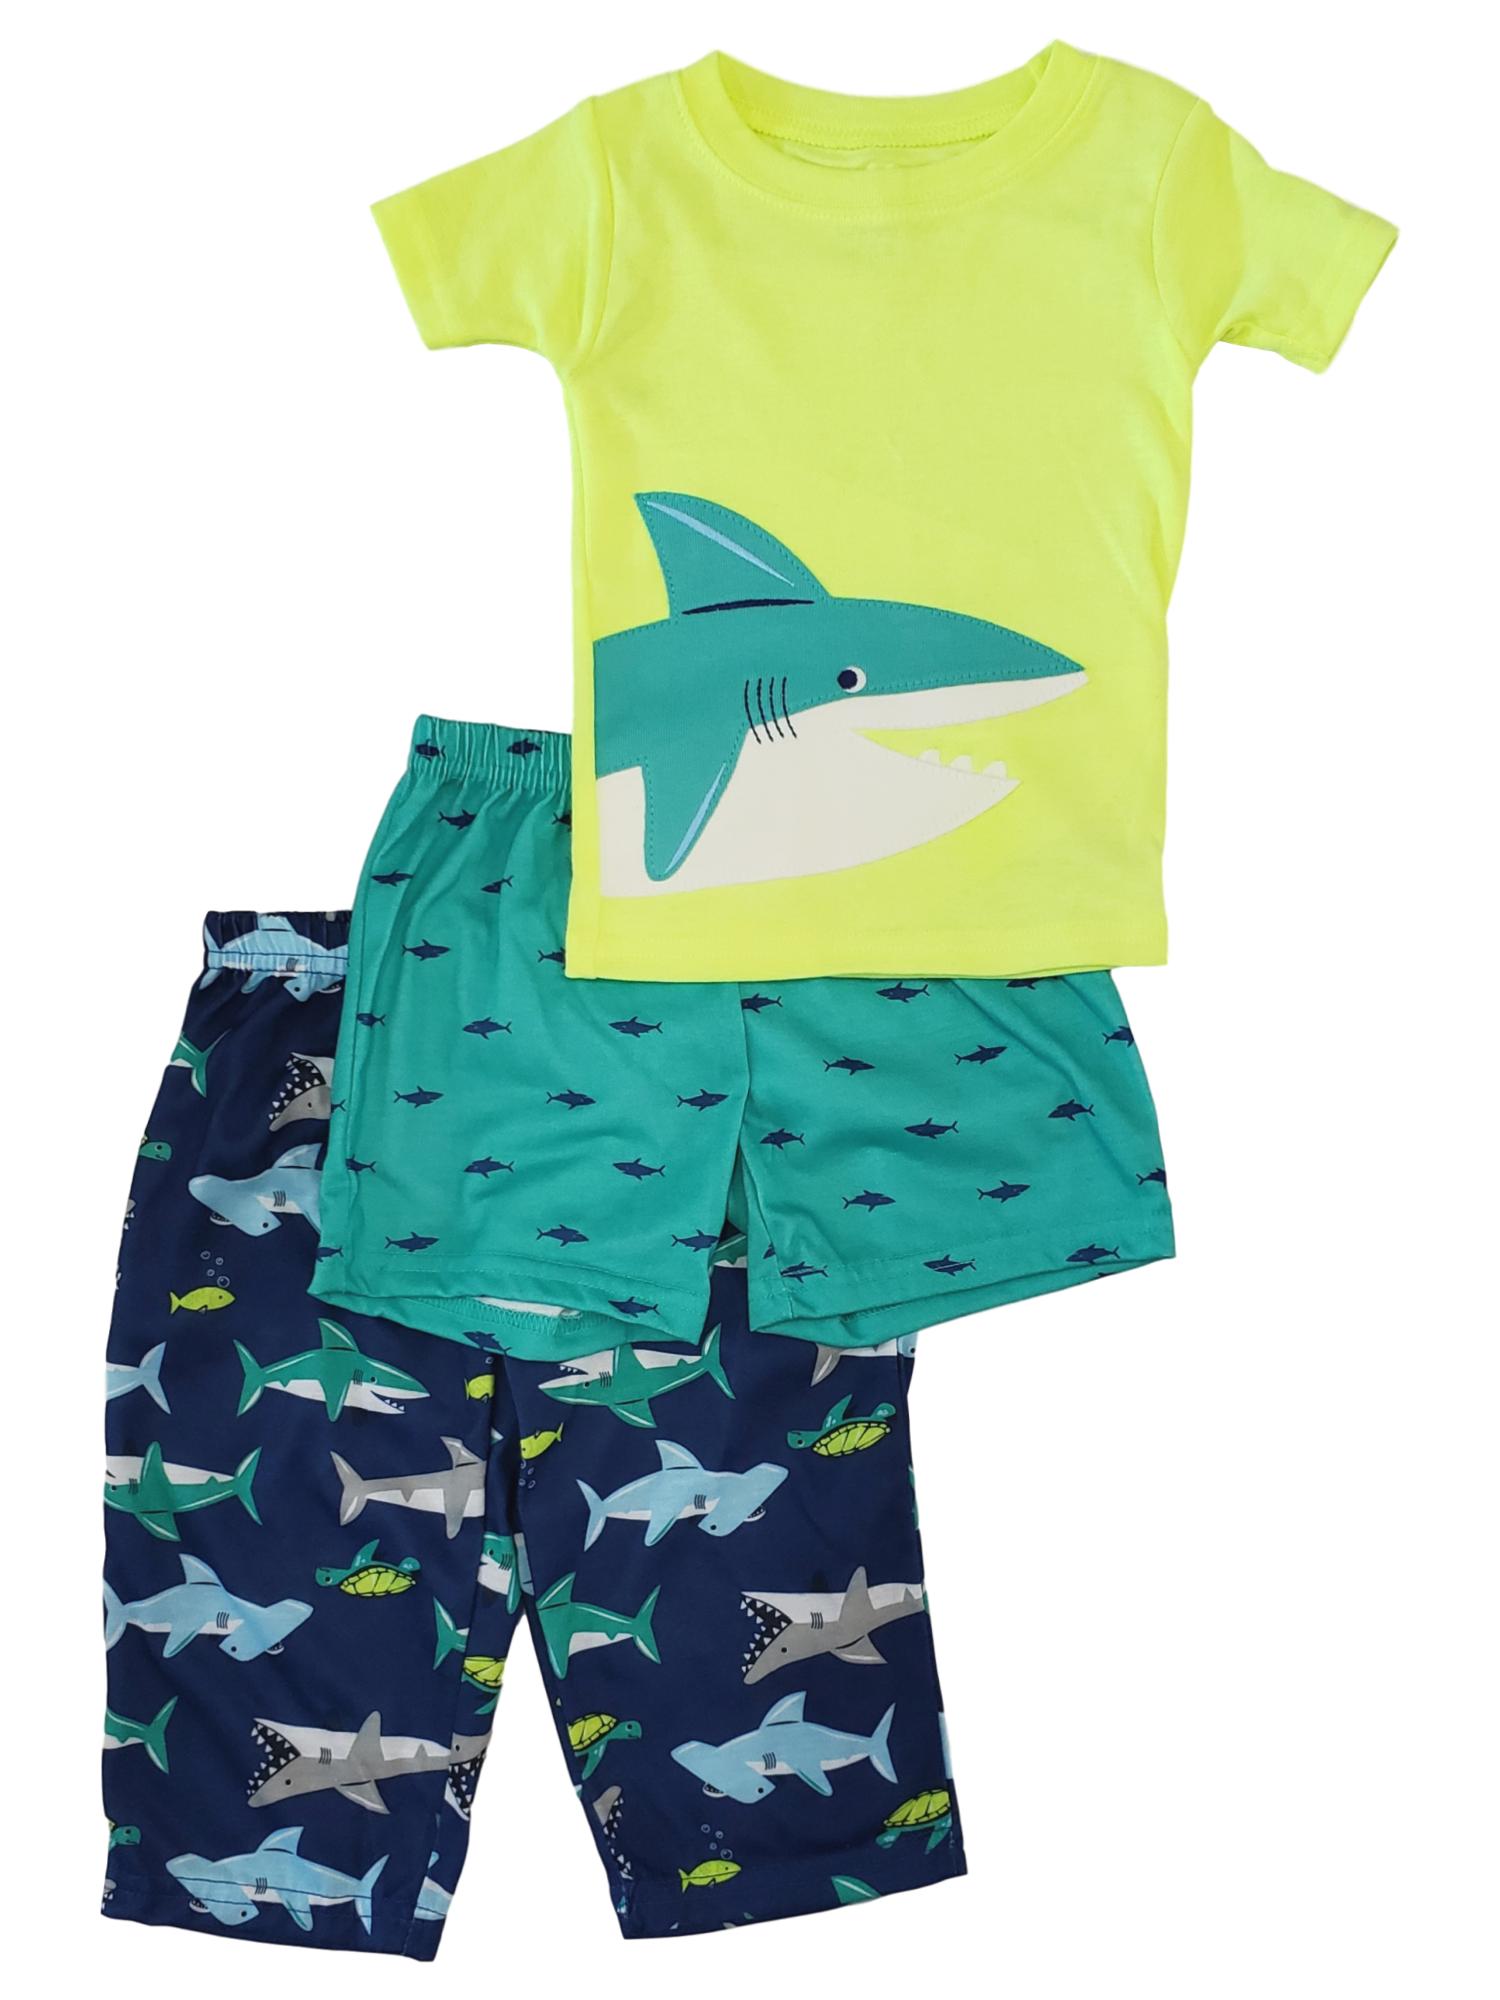 Carter's Carters Infant Baby Toddler Boy Shark Ocean Sea Life Print 3 Pc Pajama Set